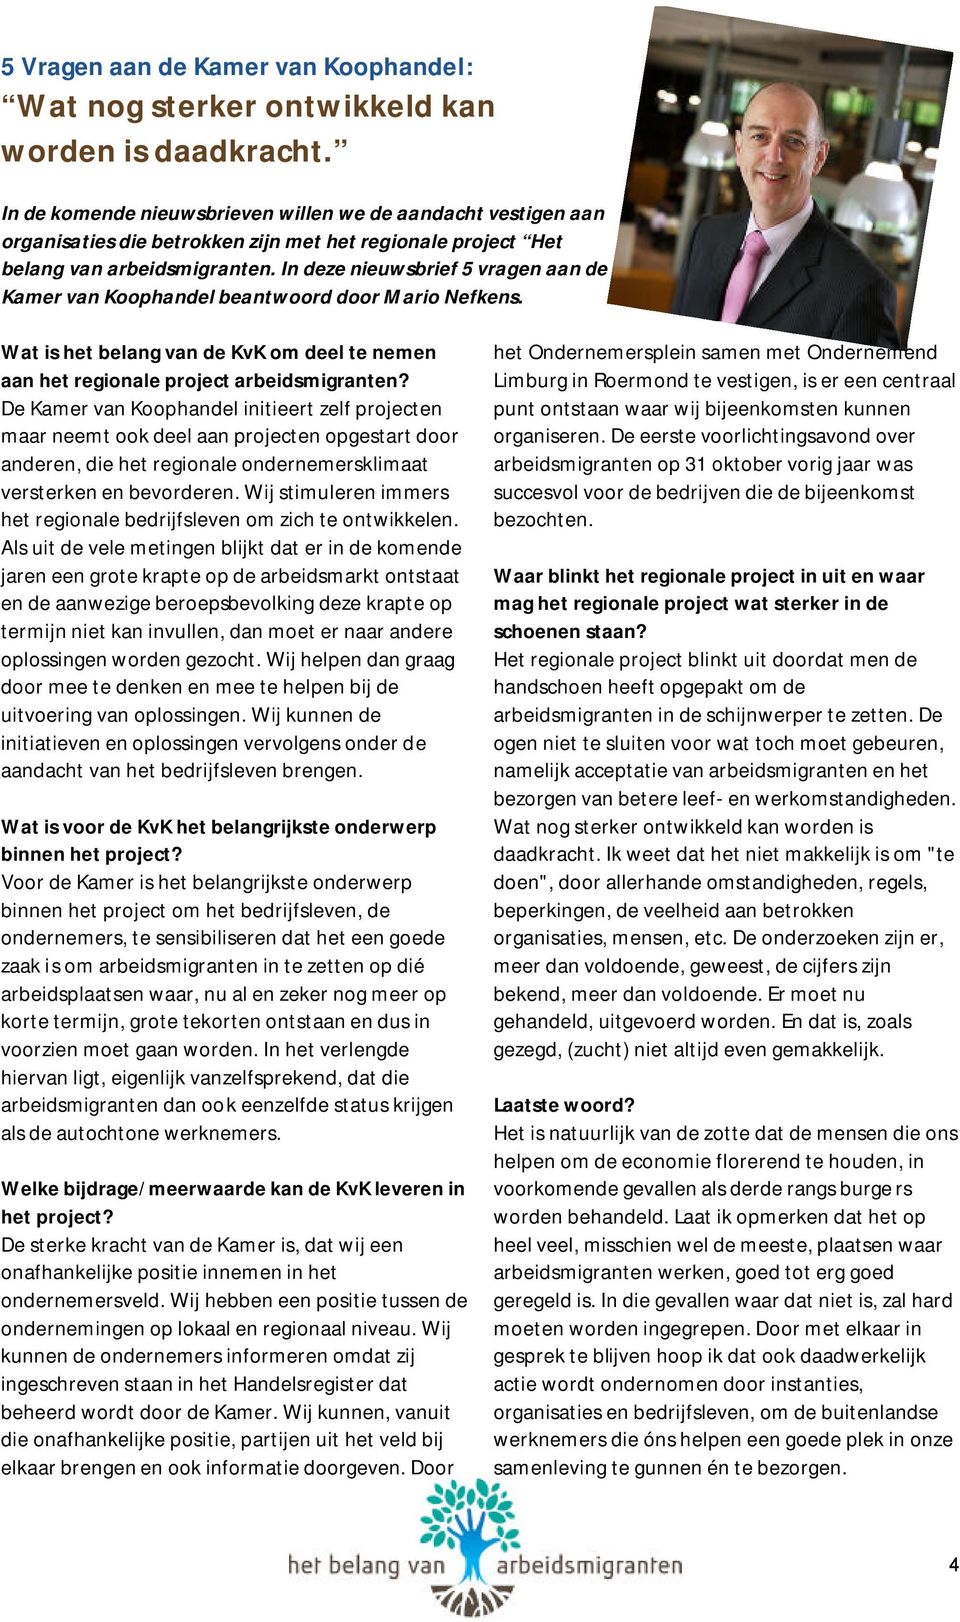 In deze nieuwsbrief 5 vragen aan de Kamer van Koophandel beantwoord door Mario Nefkens. Wat is het belang van de KvK om deel te nemen aan het regionale project arbeidsmigranten?